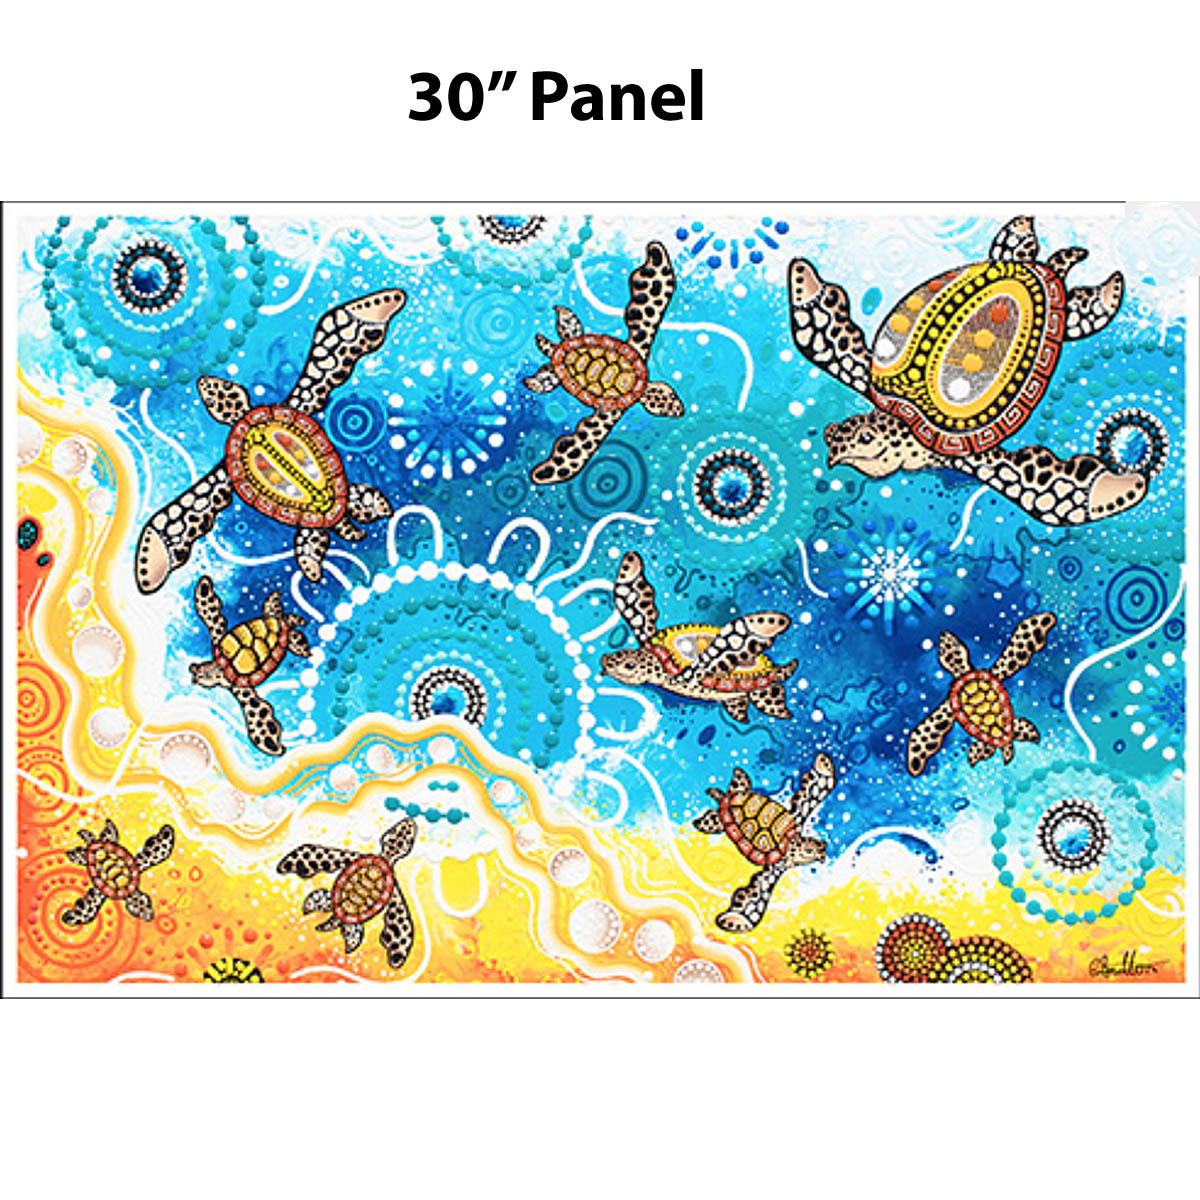 GROW BIG - Panel (30" x 44") by Aboriginal Artists Chern'ee Sutton, Brooke Sutton & Jesse Sutton